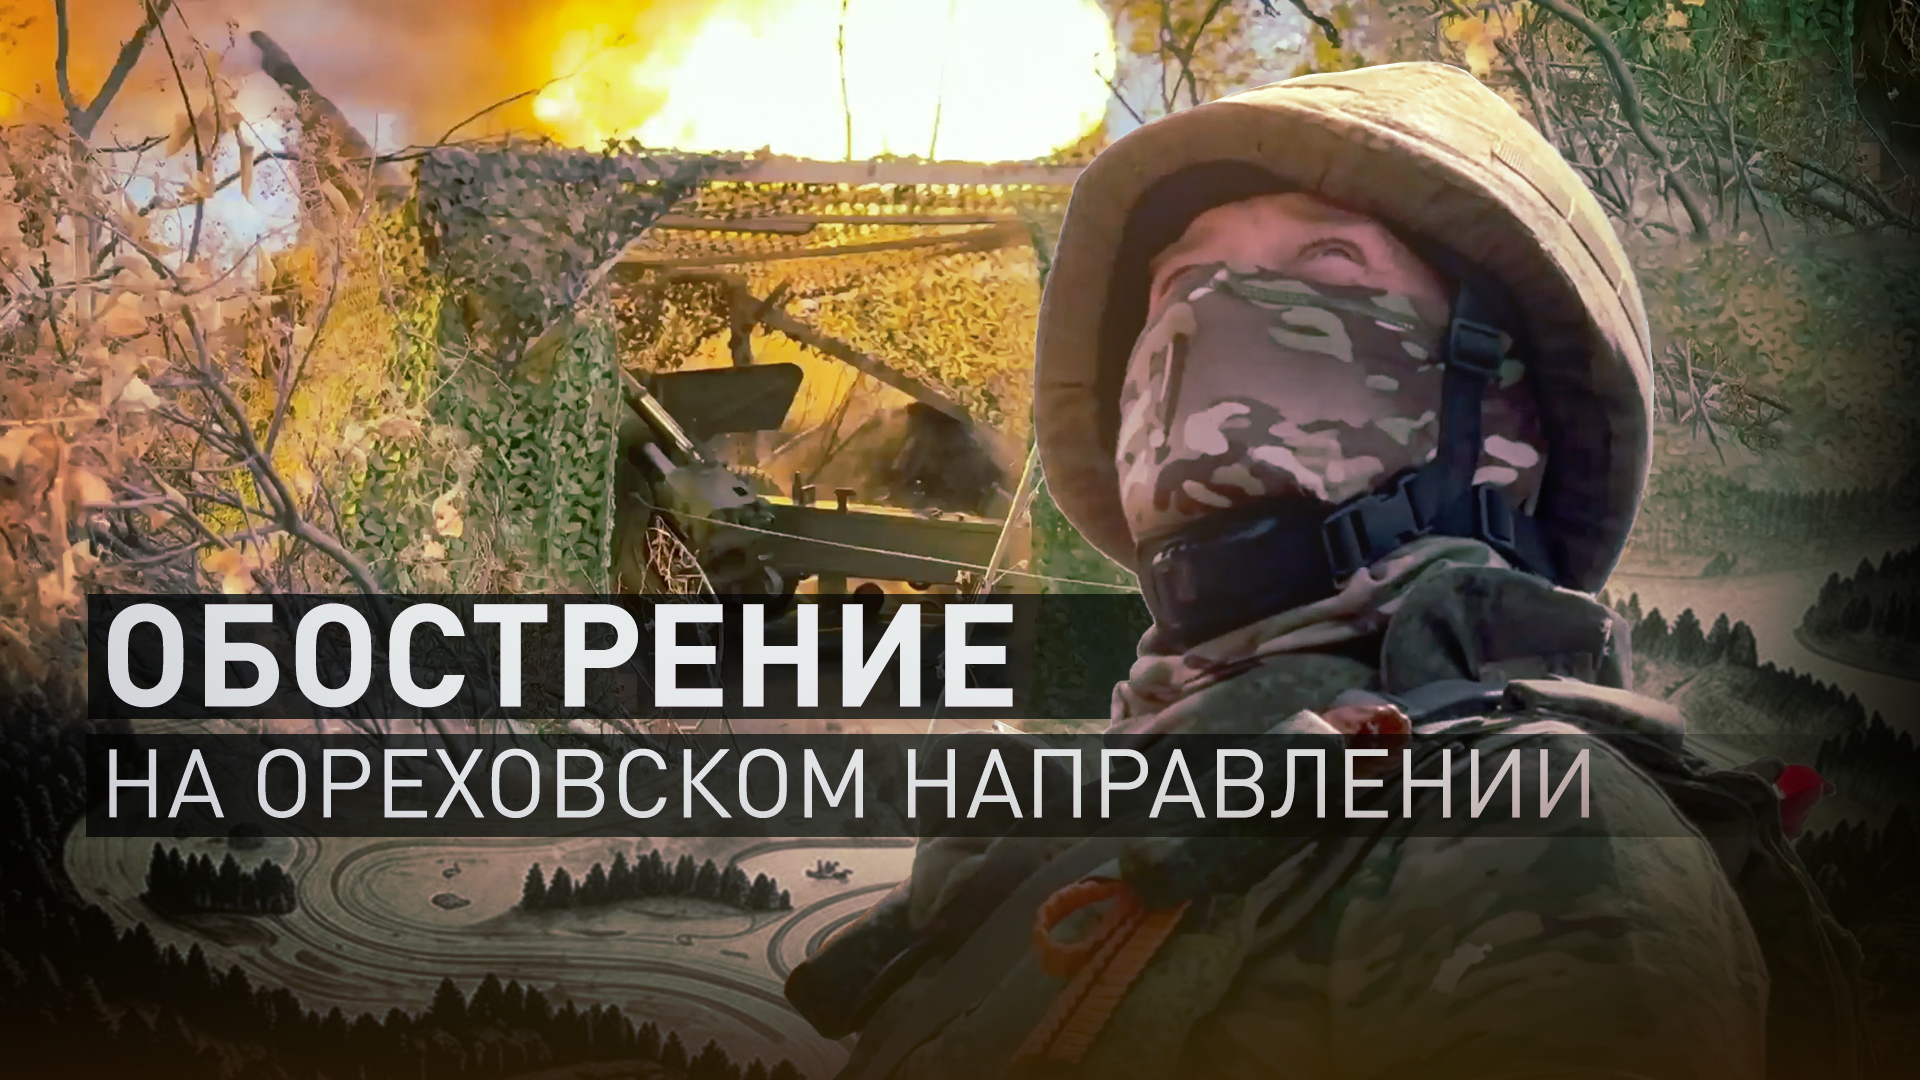 «HIMARS, скорее всего, подвезли»: боец с позывным Дес — об активизации ВСУ на Ореховском направлении